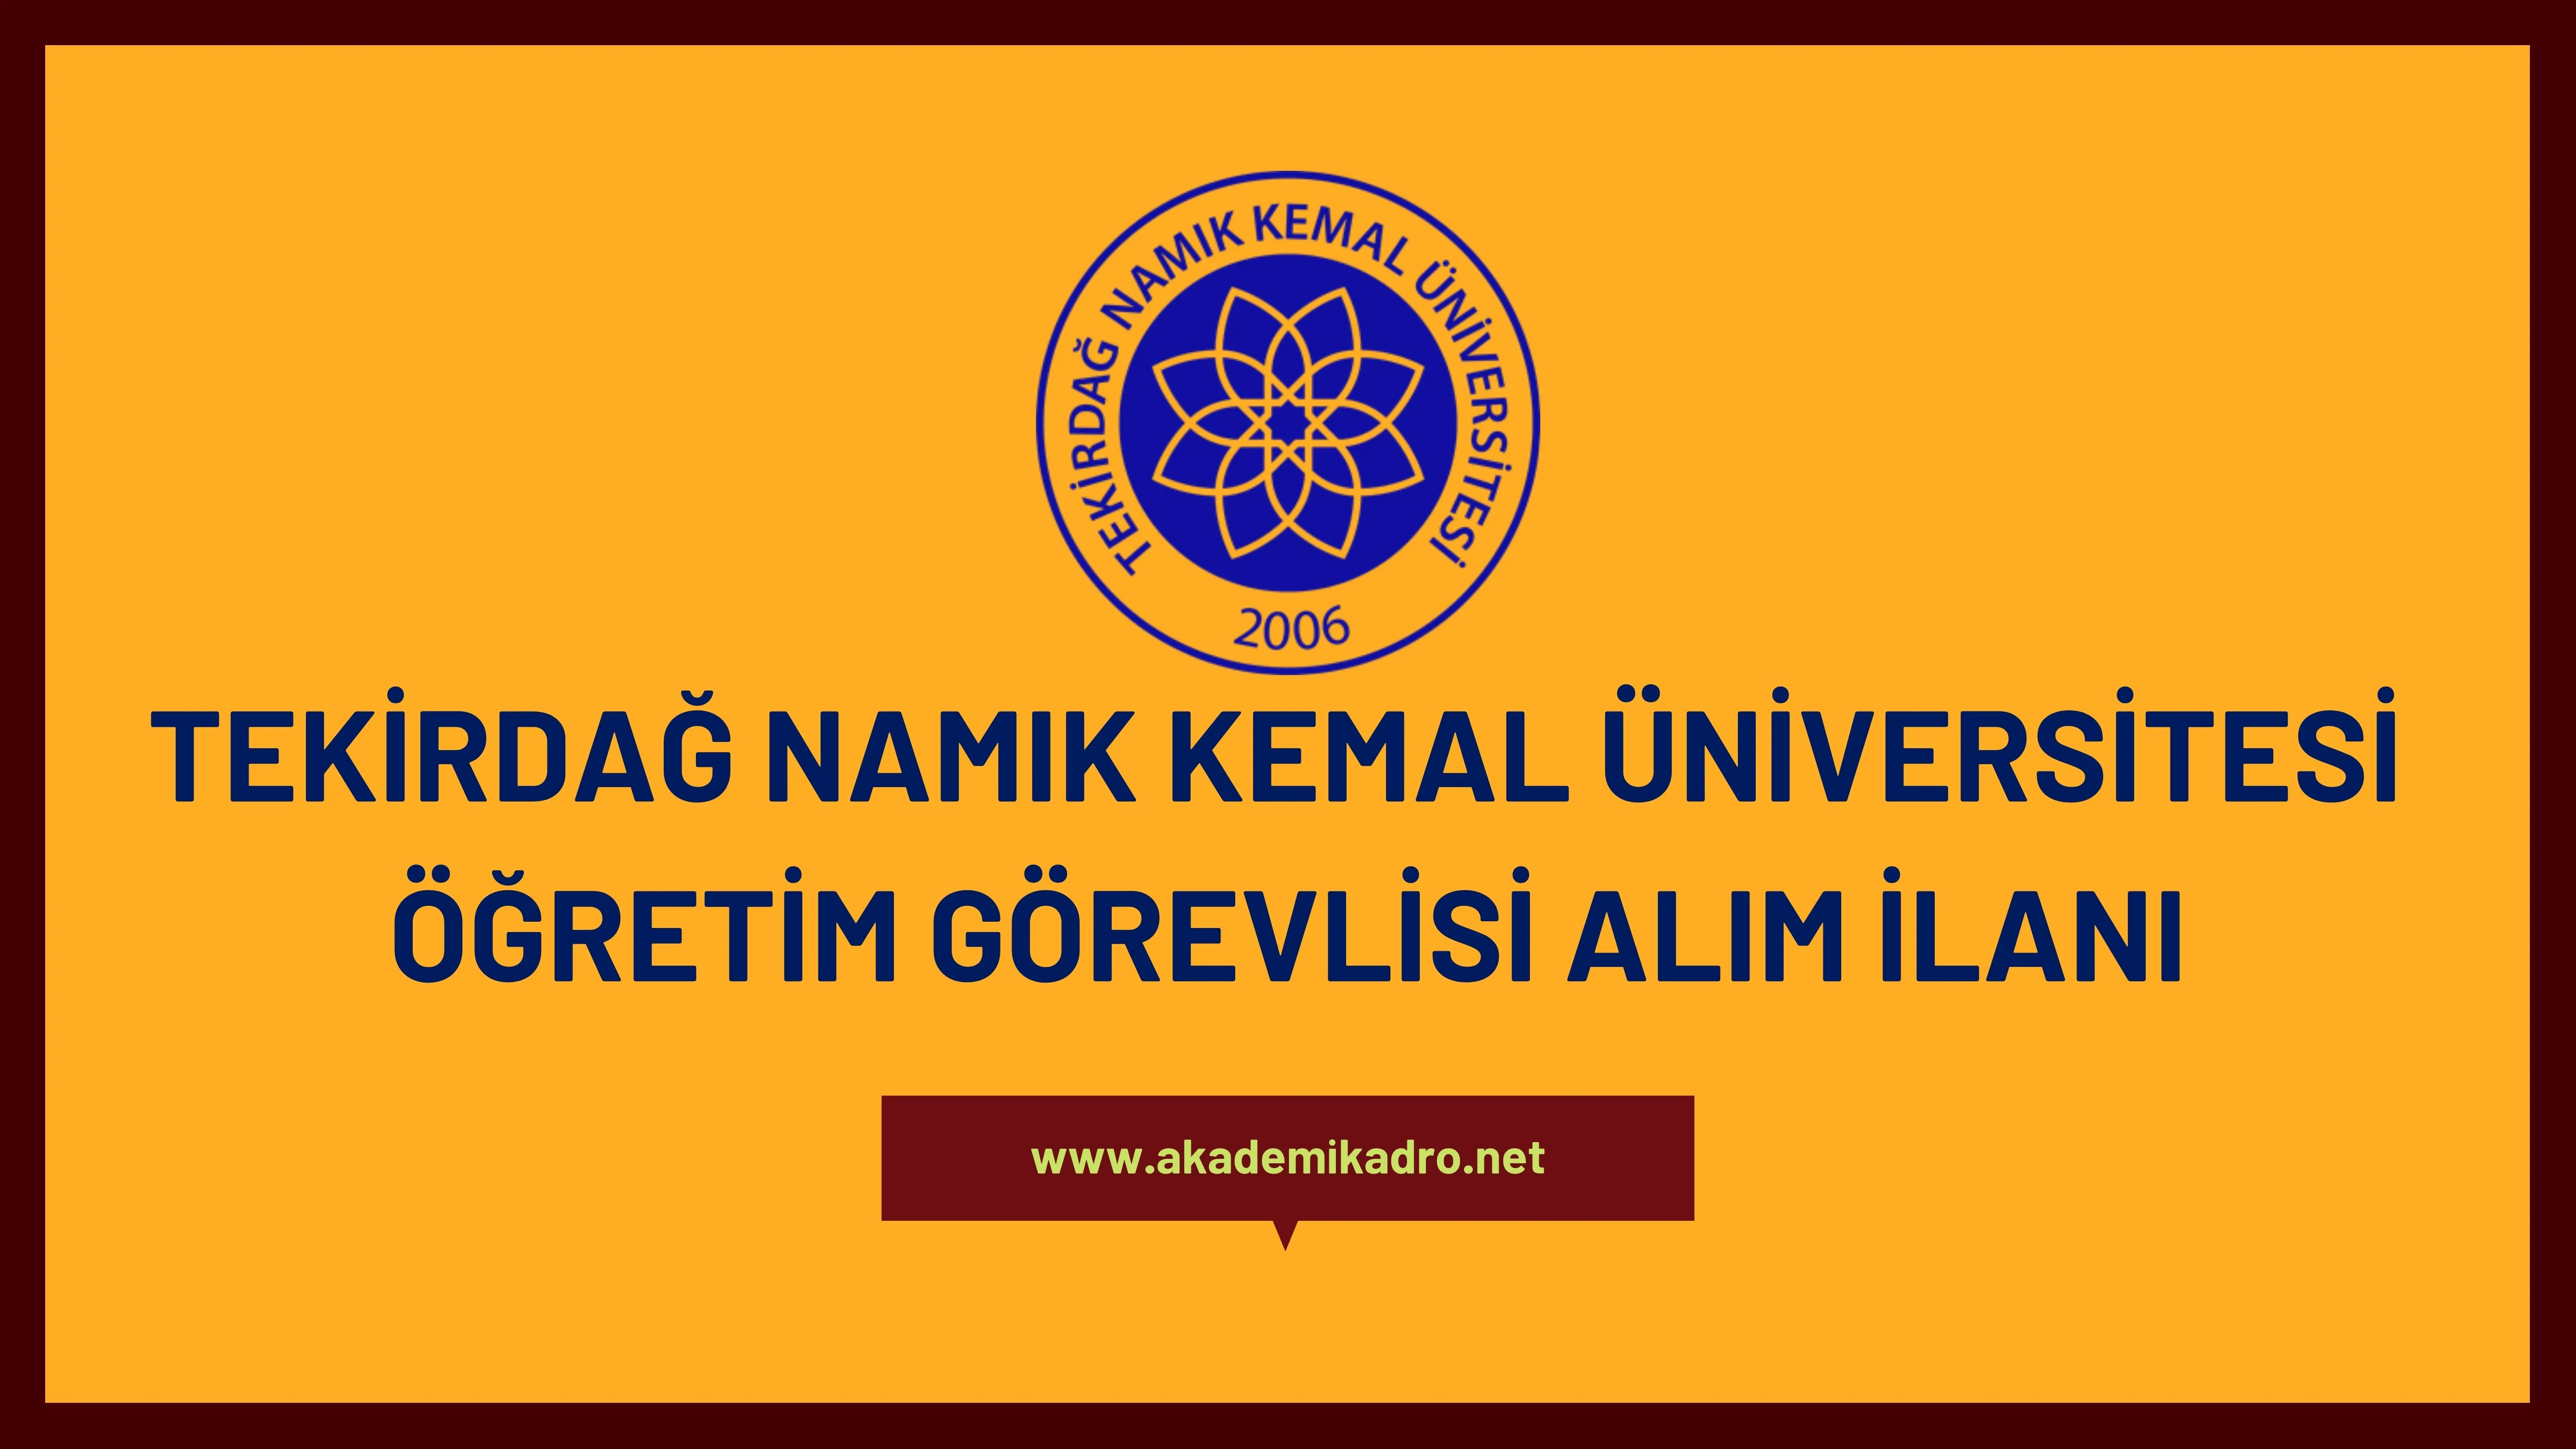 Tekirdağ Namık Kemal Üniversitesi Öğretim Görevlisi alacaktır. Son başvuru tarihi 16 Ocak 2023